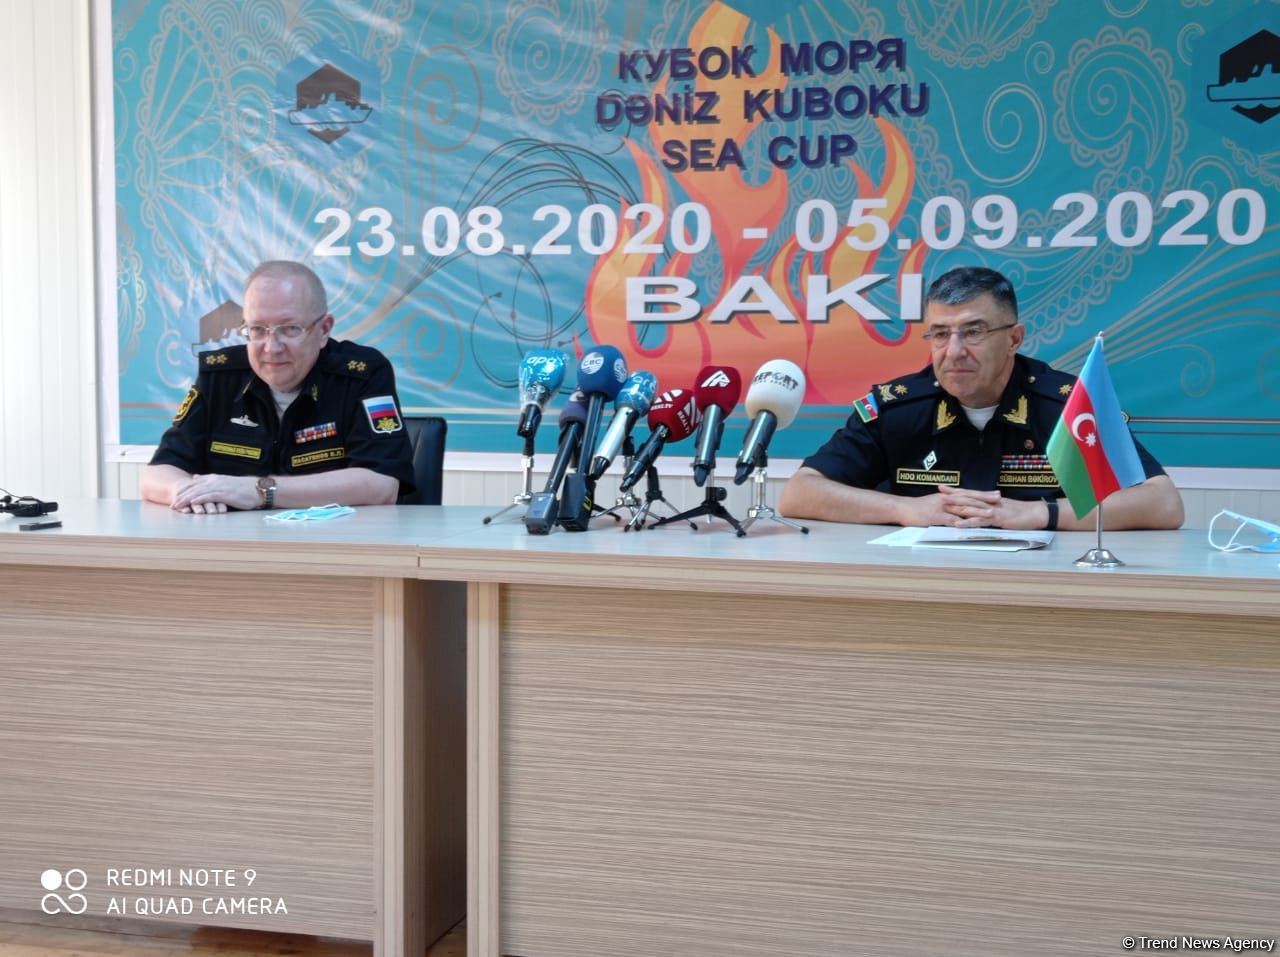 ВМФ России: Конкурс "Кубок моря" - символ нашей дружбы и морского братства